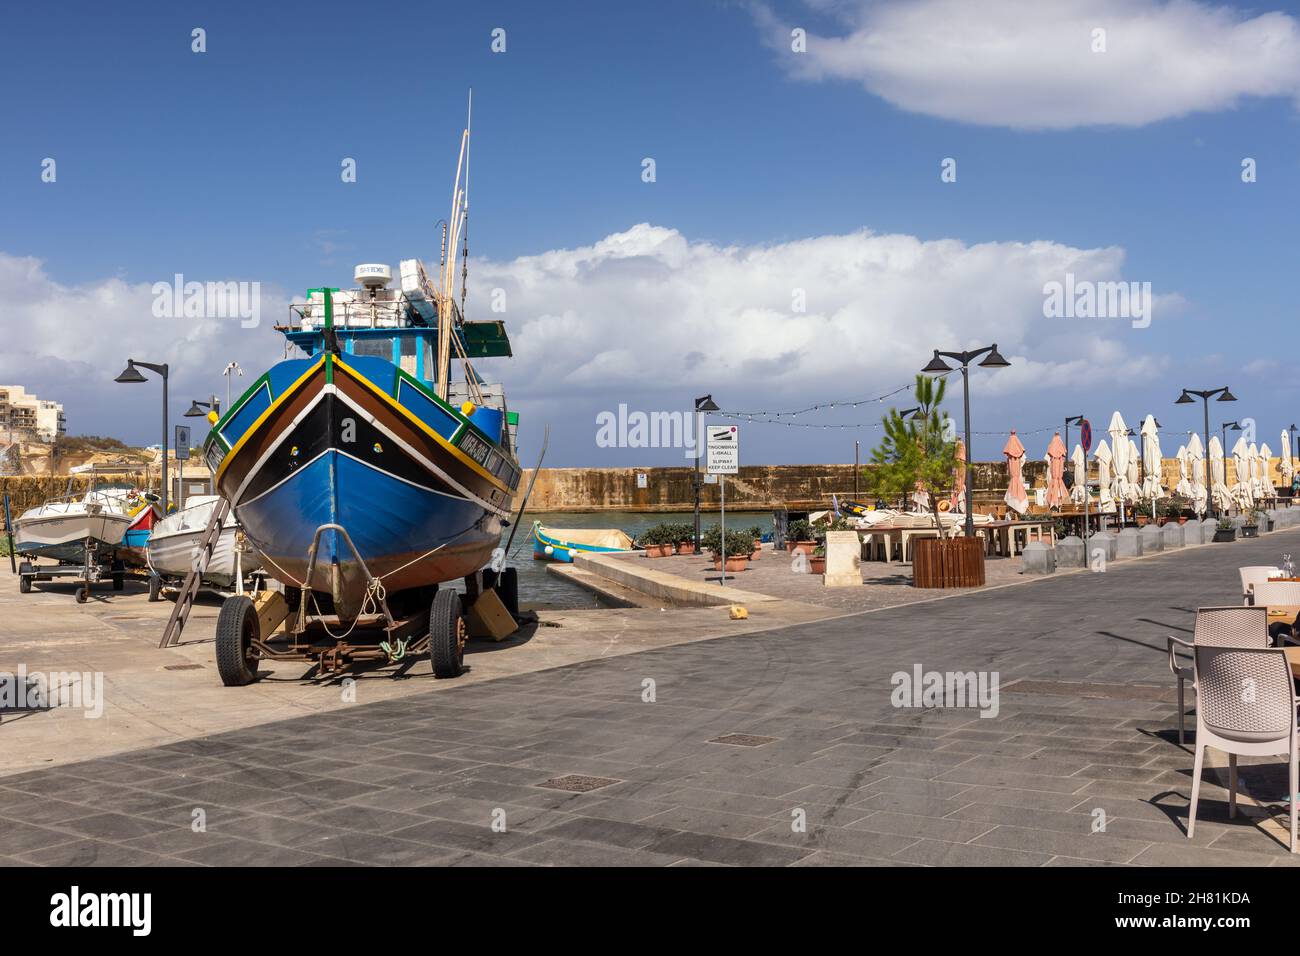 Un bateau de pêche coloré sur le front de mer dans le village de pêcheurs de Marsalforn, Marsalforn Bay, Gozo, Malte, Europe Banque D'Images